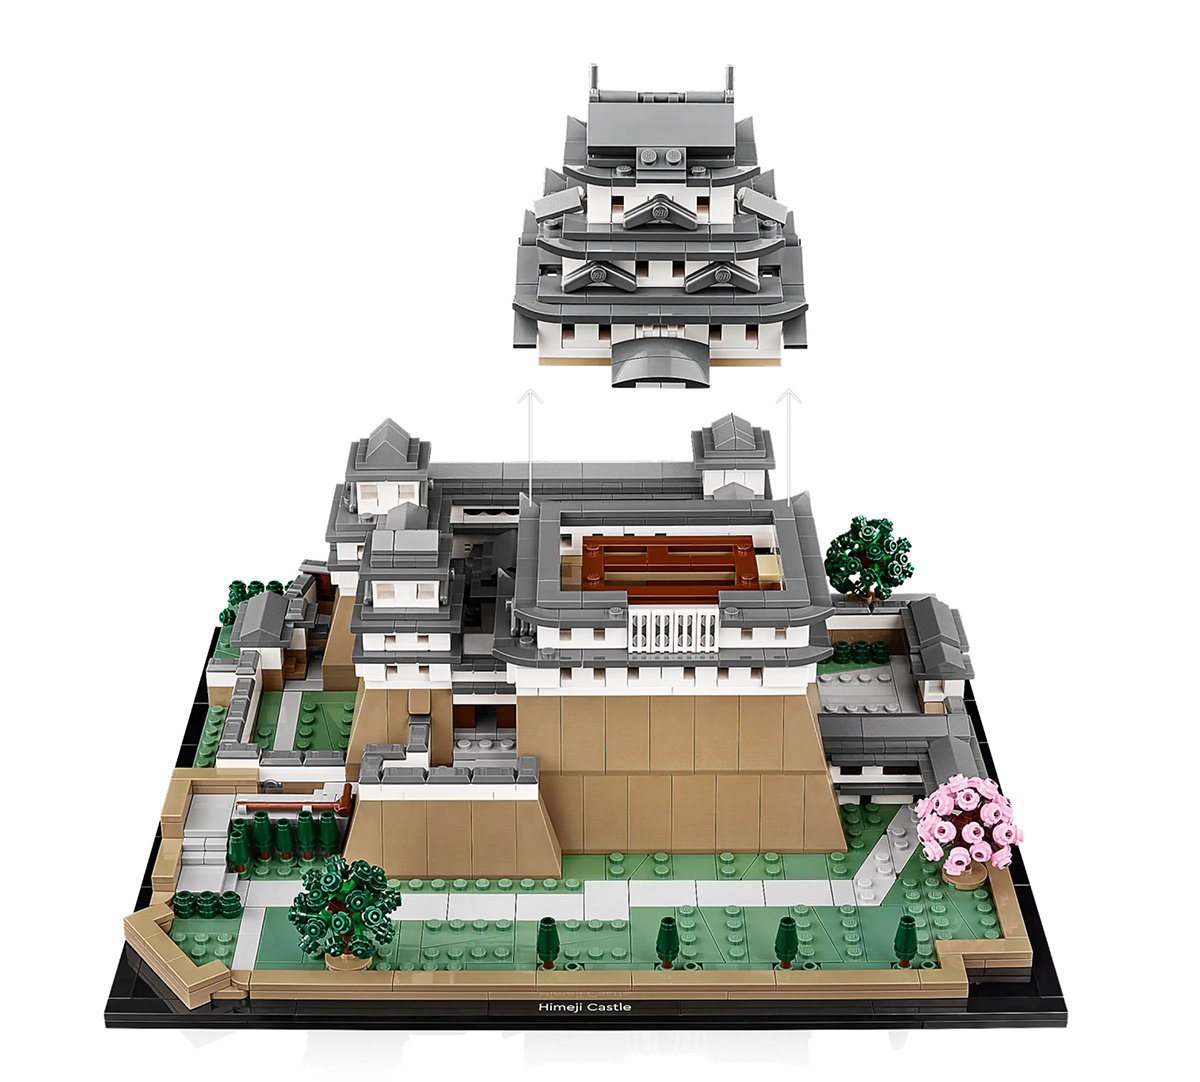 LEGO commercialise une réplique de 2125 pièces du château d'Himeji